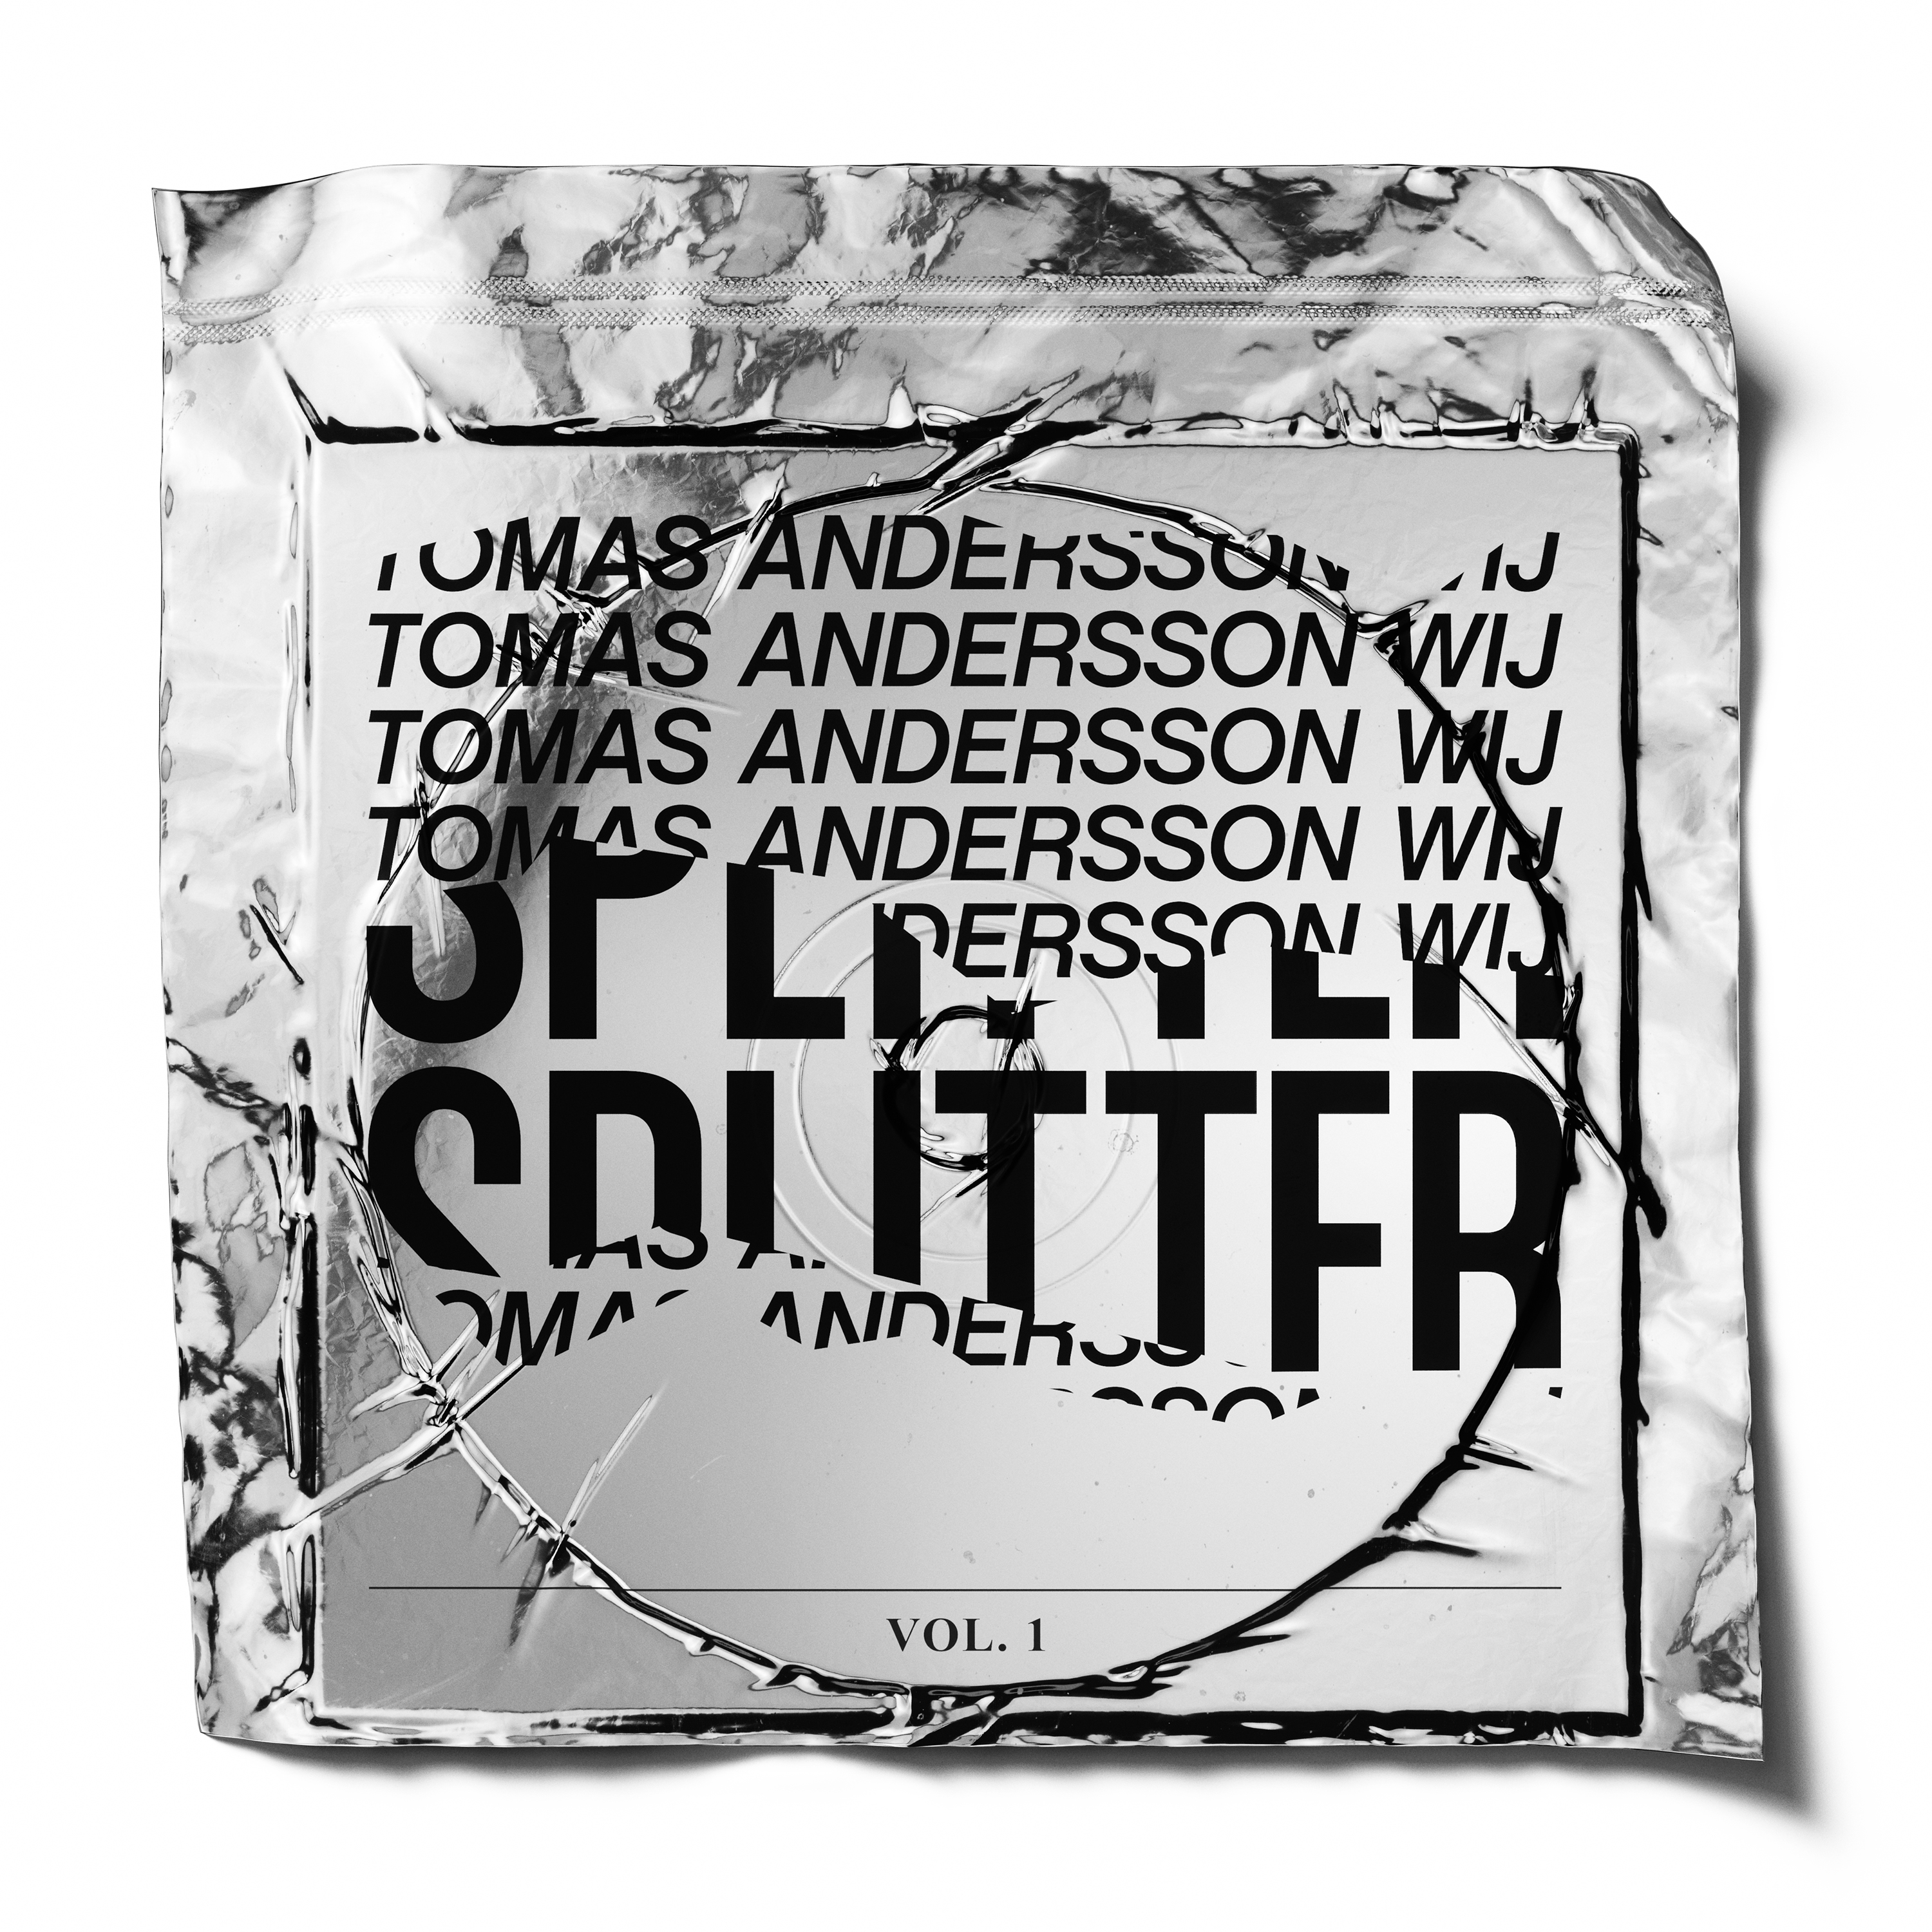 Tomas Andersson Wij - Splitter, Vol. 1 - CD